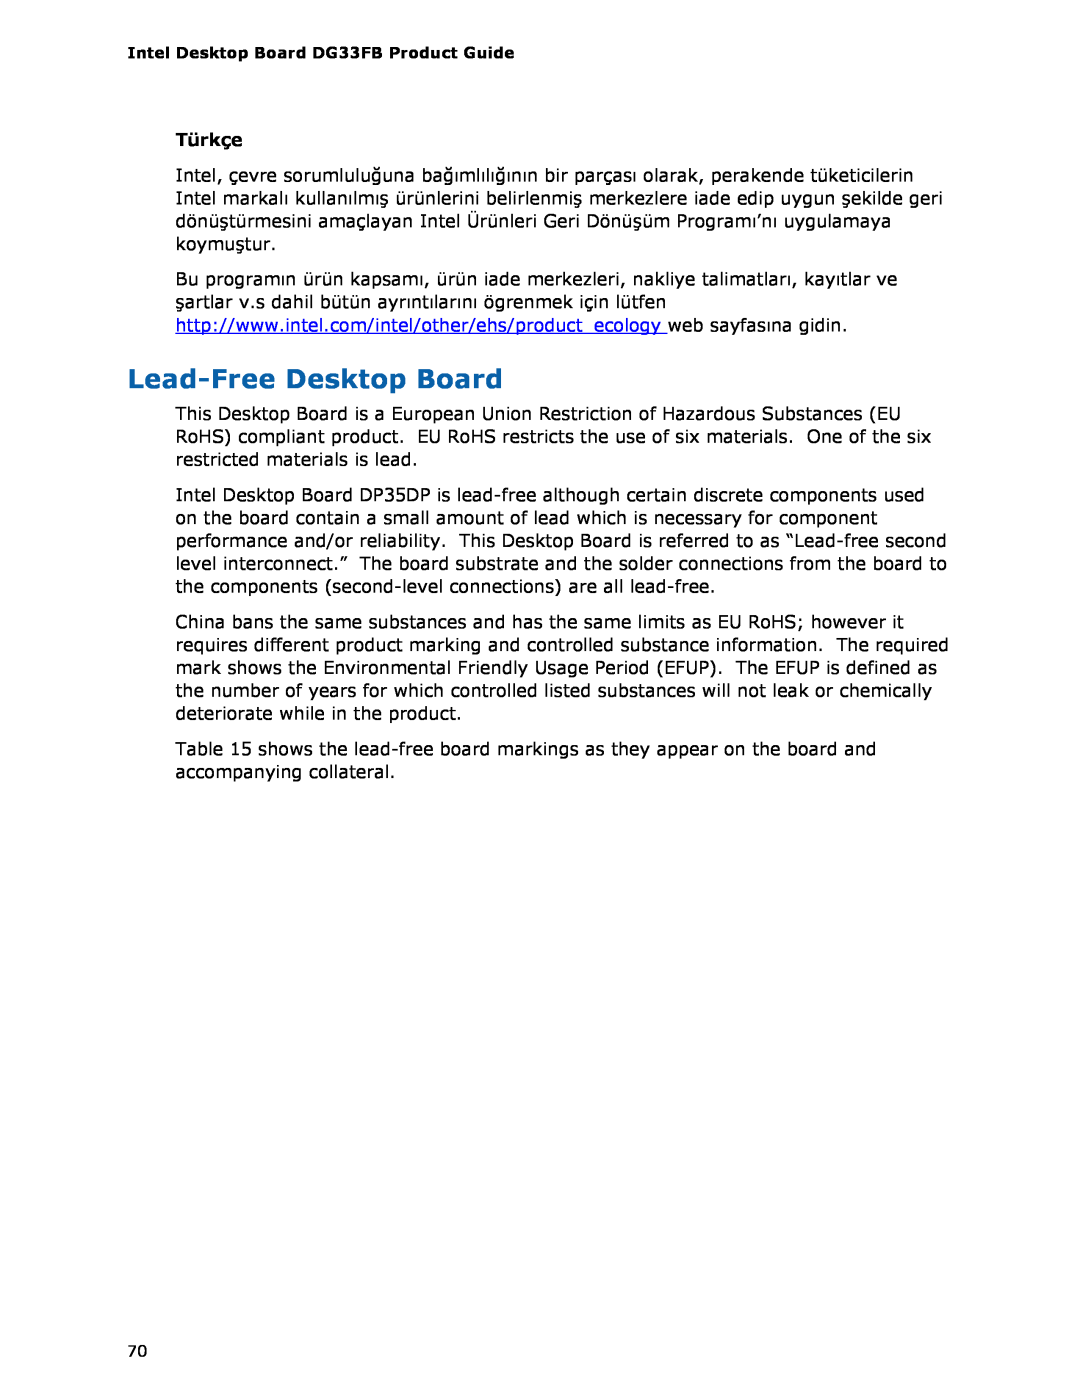 Intel DG33FB manual Lead-FreeDesktop Board, Türkçe 